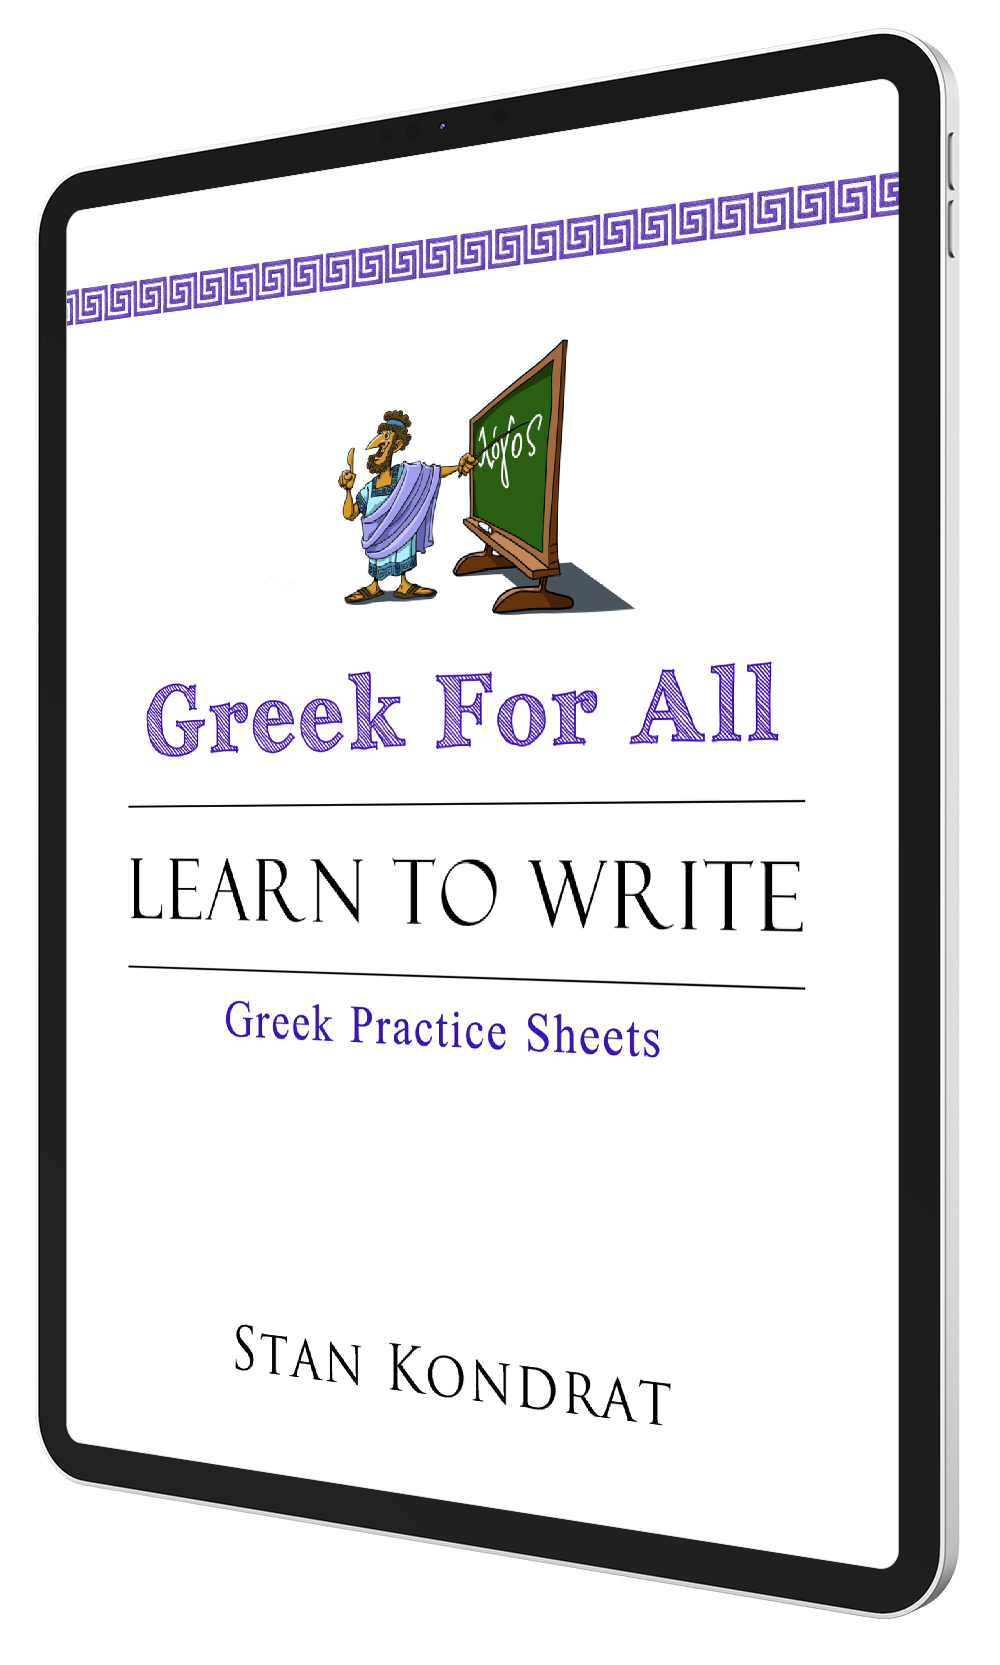 Biblical Greek Alphabet worksheets